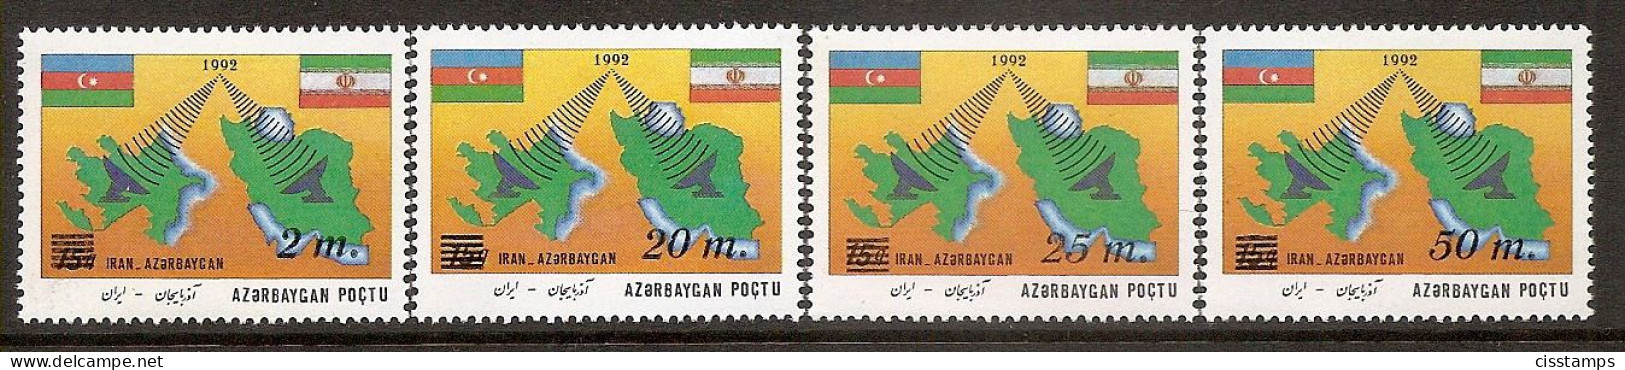 Azerbaijan 1994●Azerbaijan-Iran Telecomunication●Surcharge●Flags●Maps●Mi118-21 MNH - Azerbaïjan